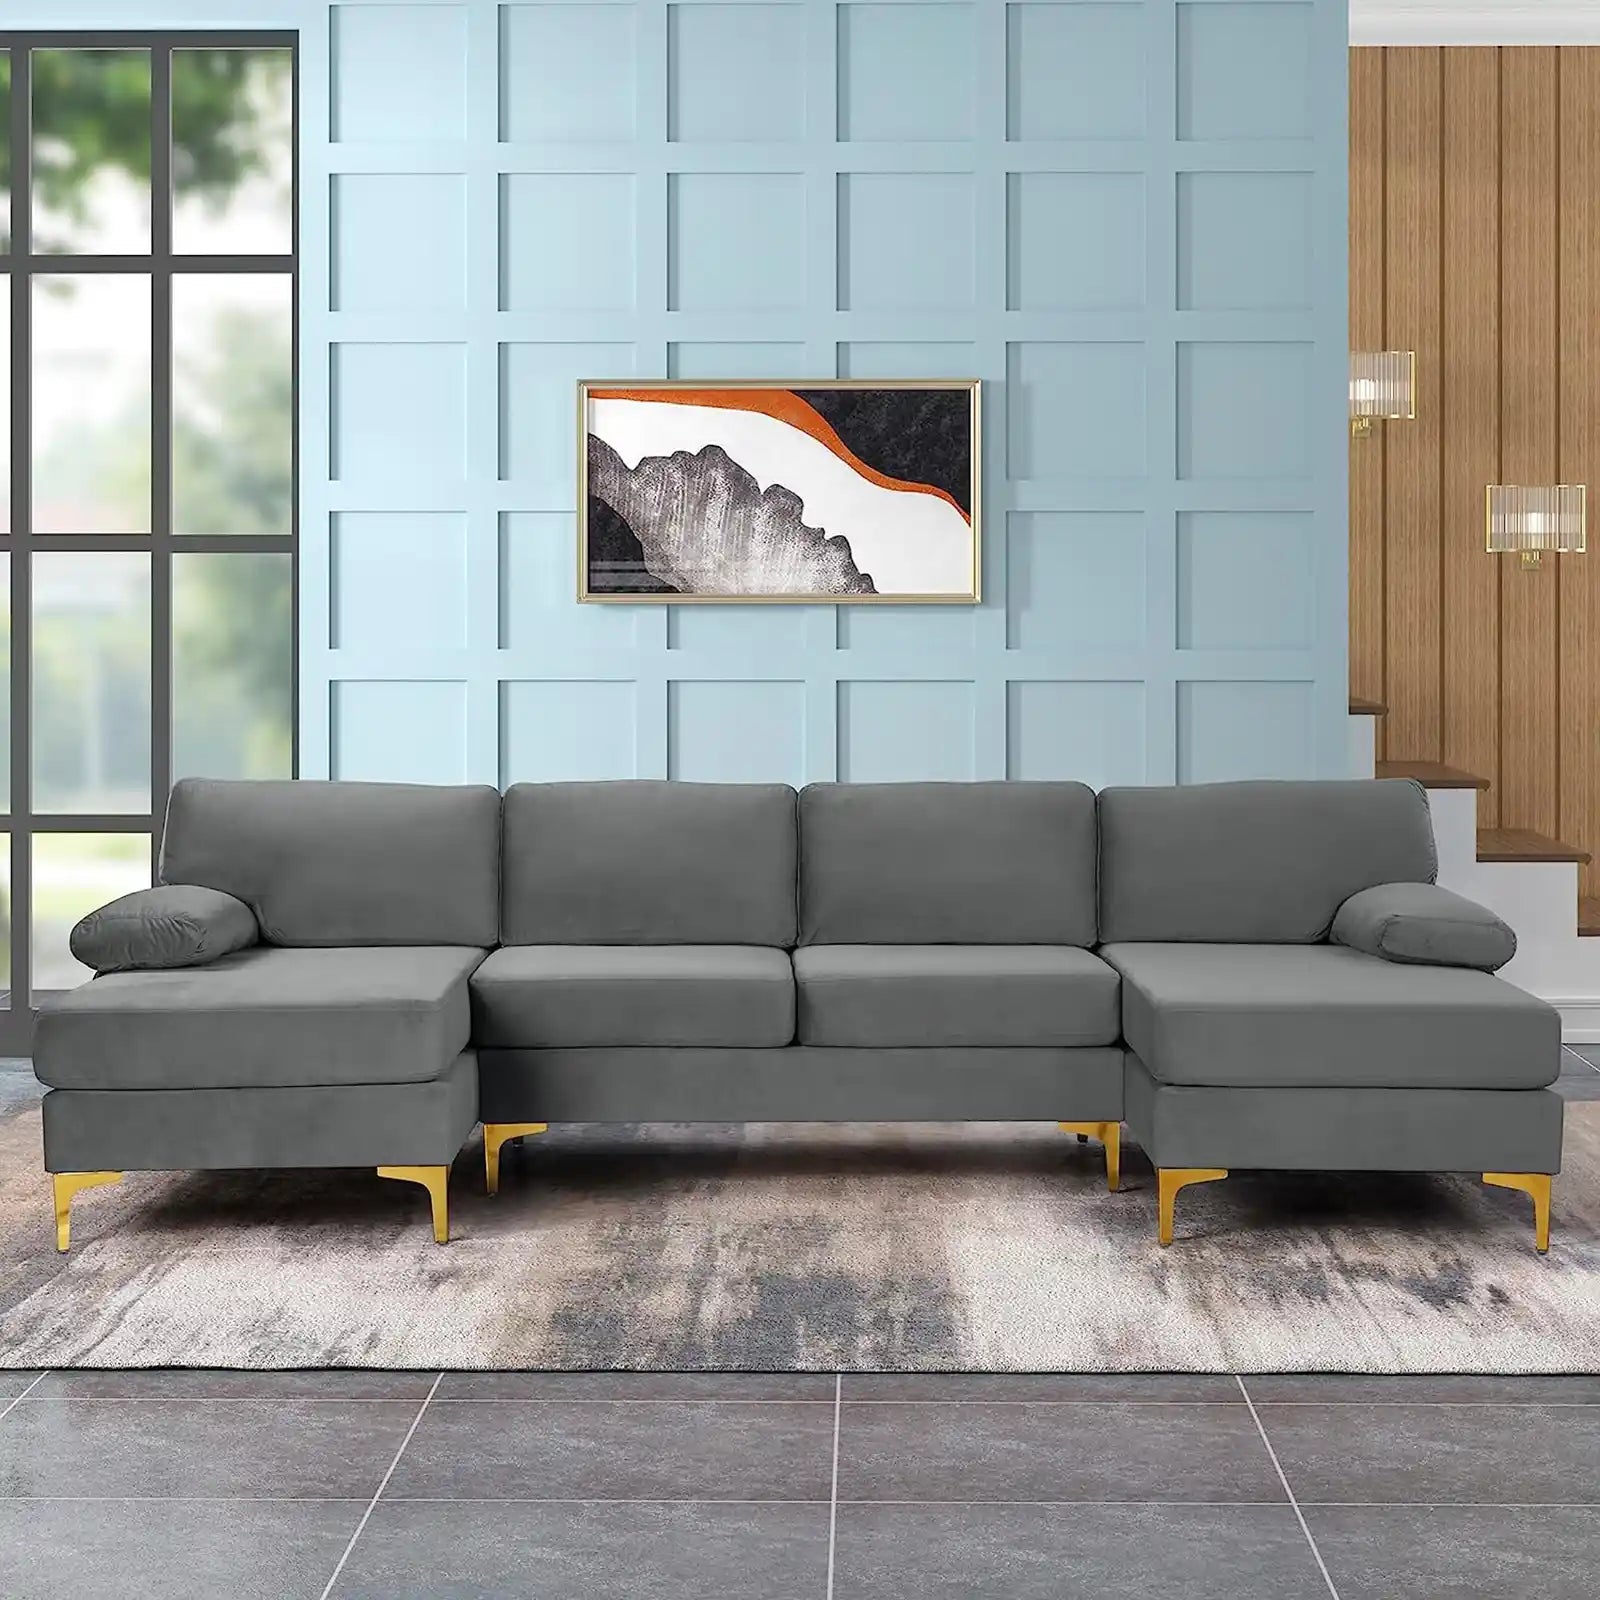 Sofá seccional grande moderno de tela de terciopelo en forma de U, sofá chaise lounge doble extra ancho con patas doradas 